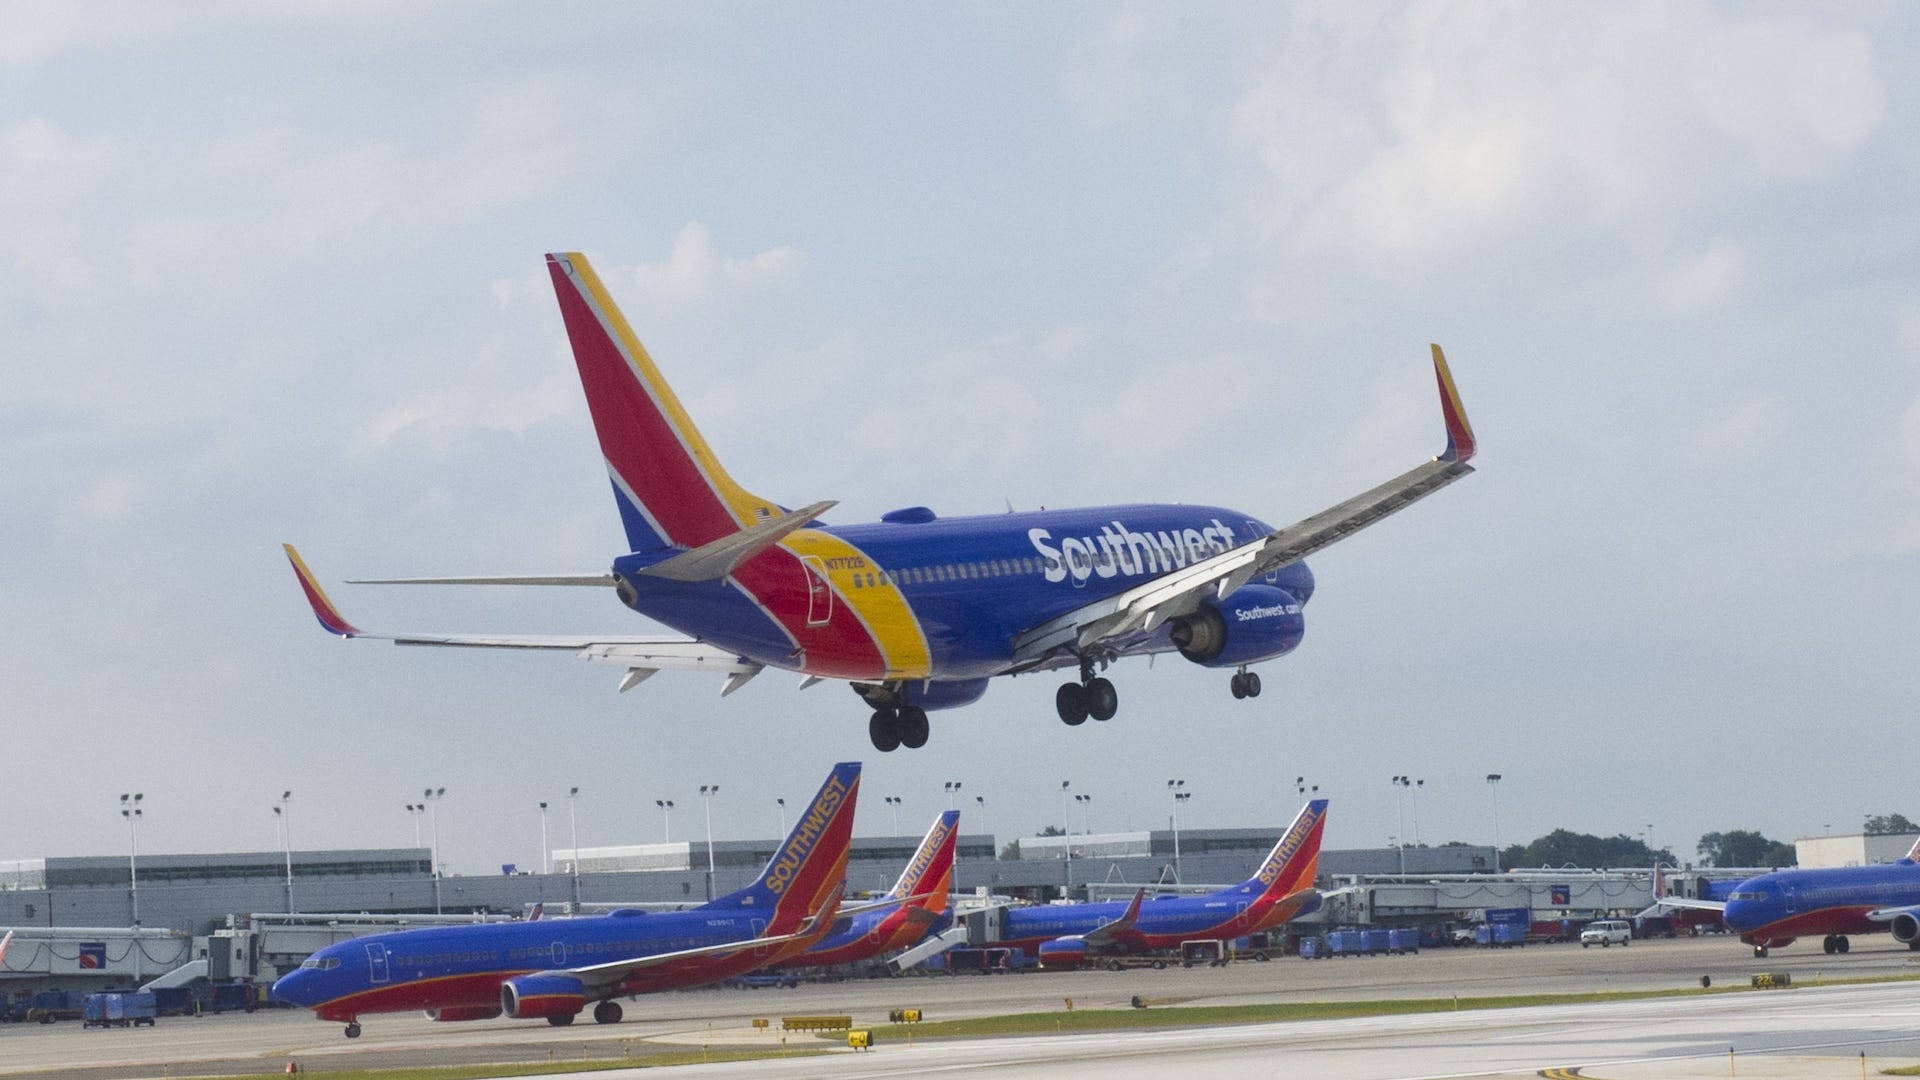 Aviónde Southwest Airlines Aterrizando En El Aeropuerto. Fondo de pantalla